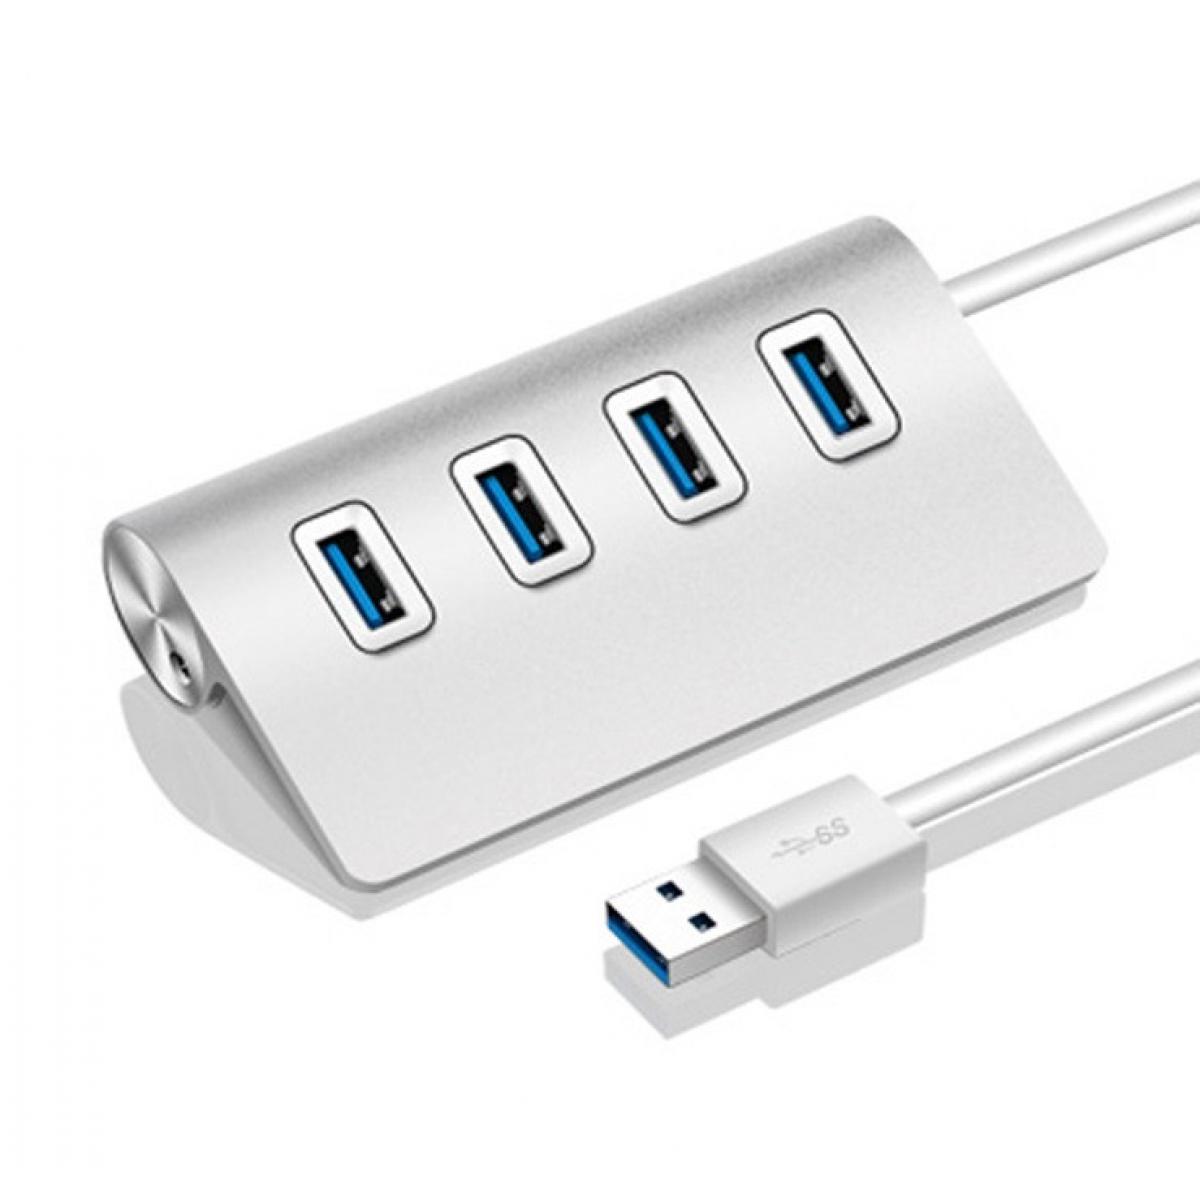 Shot - Hub Metal 4 ports USB 2.0 pour PC THOMSOM Multi-prises Adaptateur Rallonge (ARGENT) - Hub